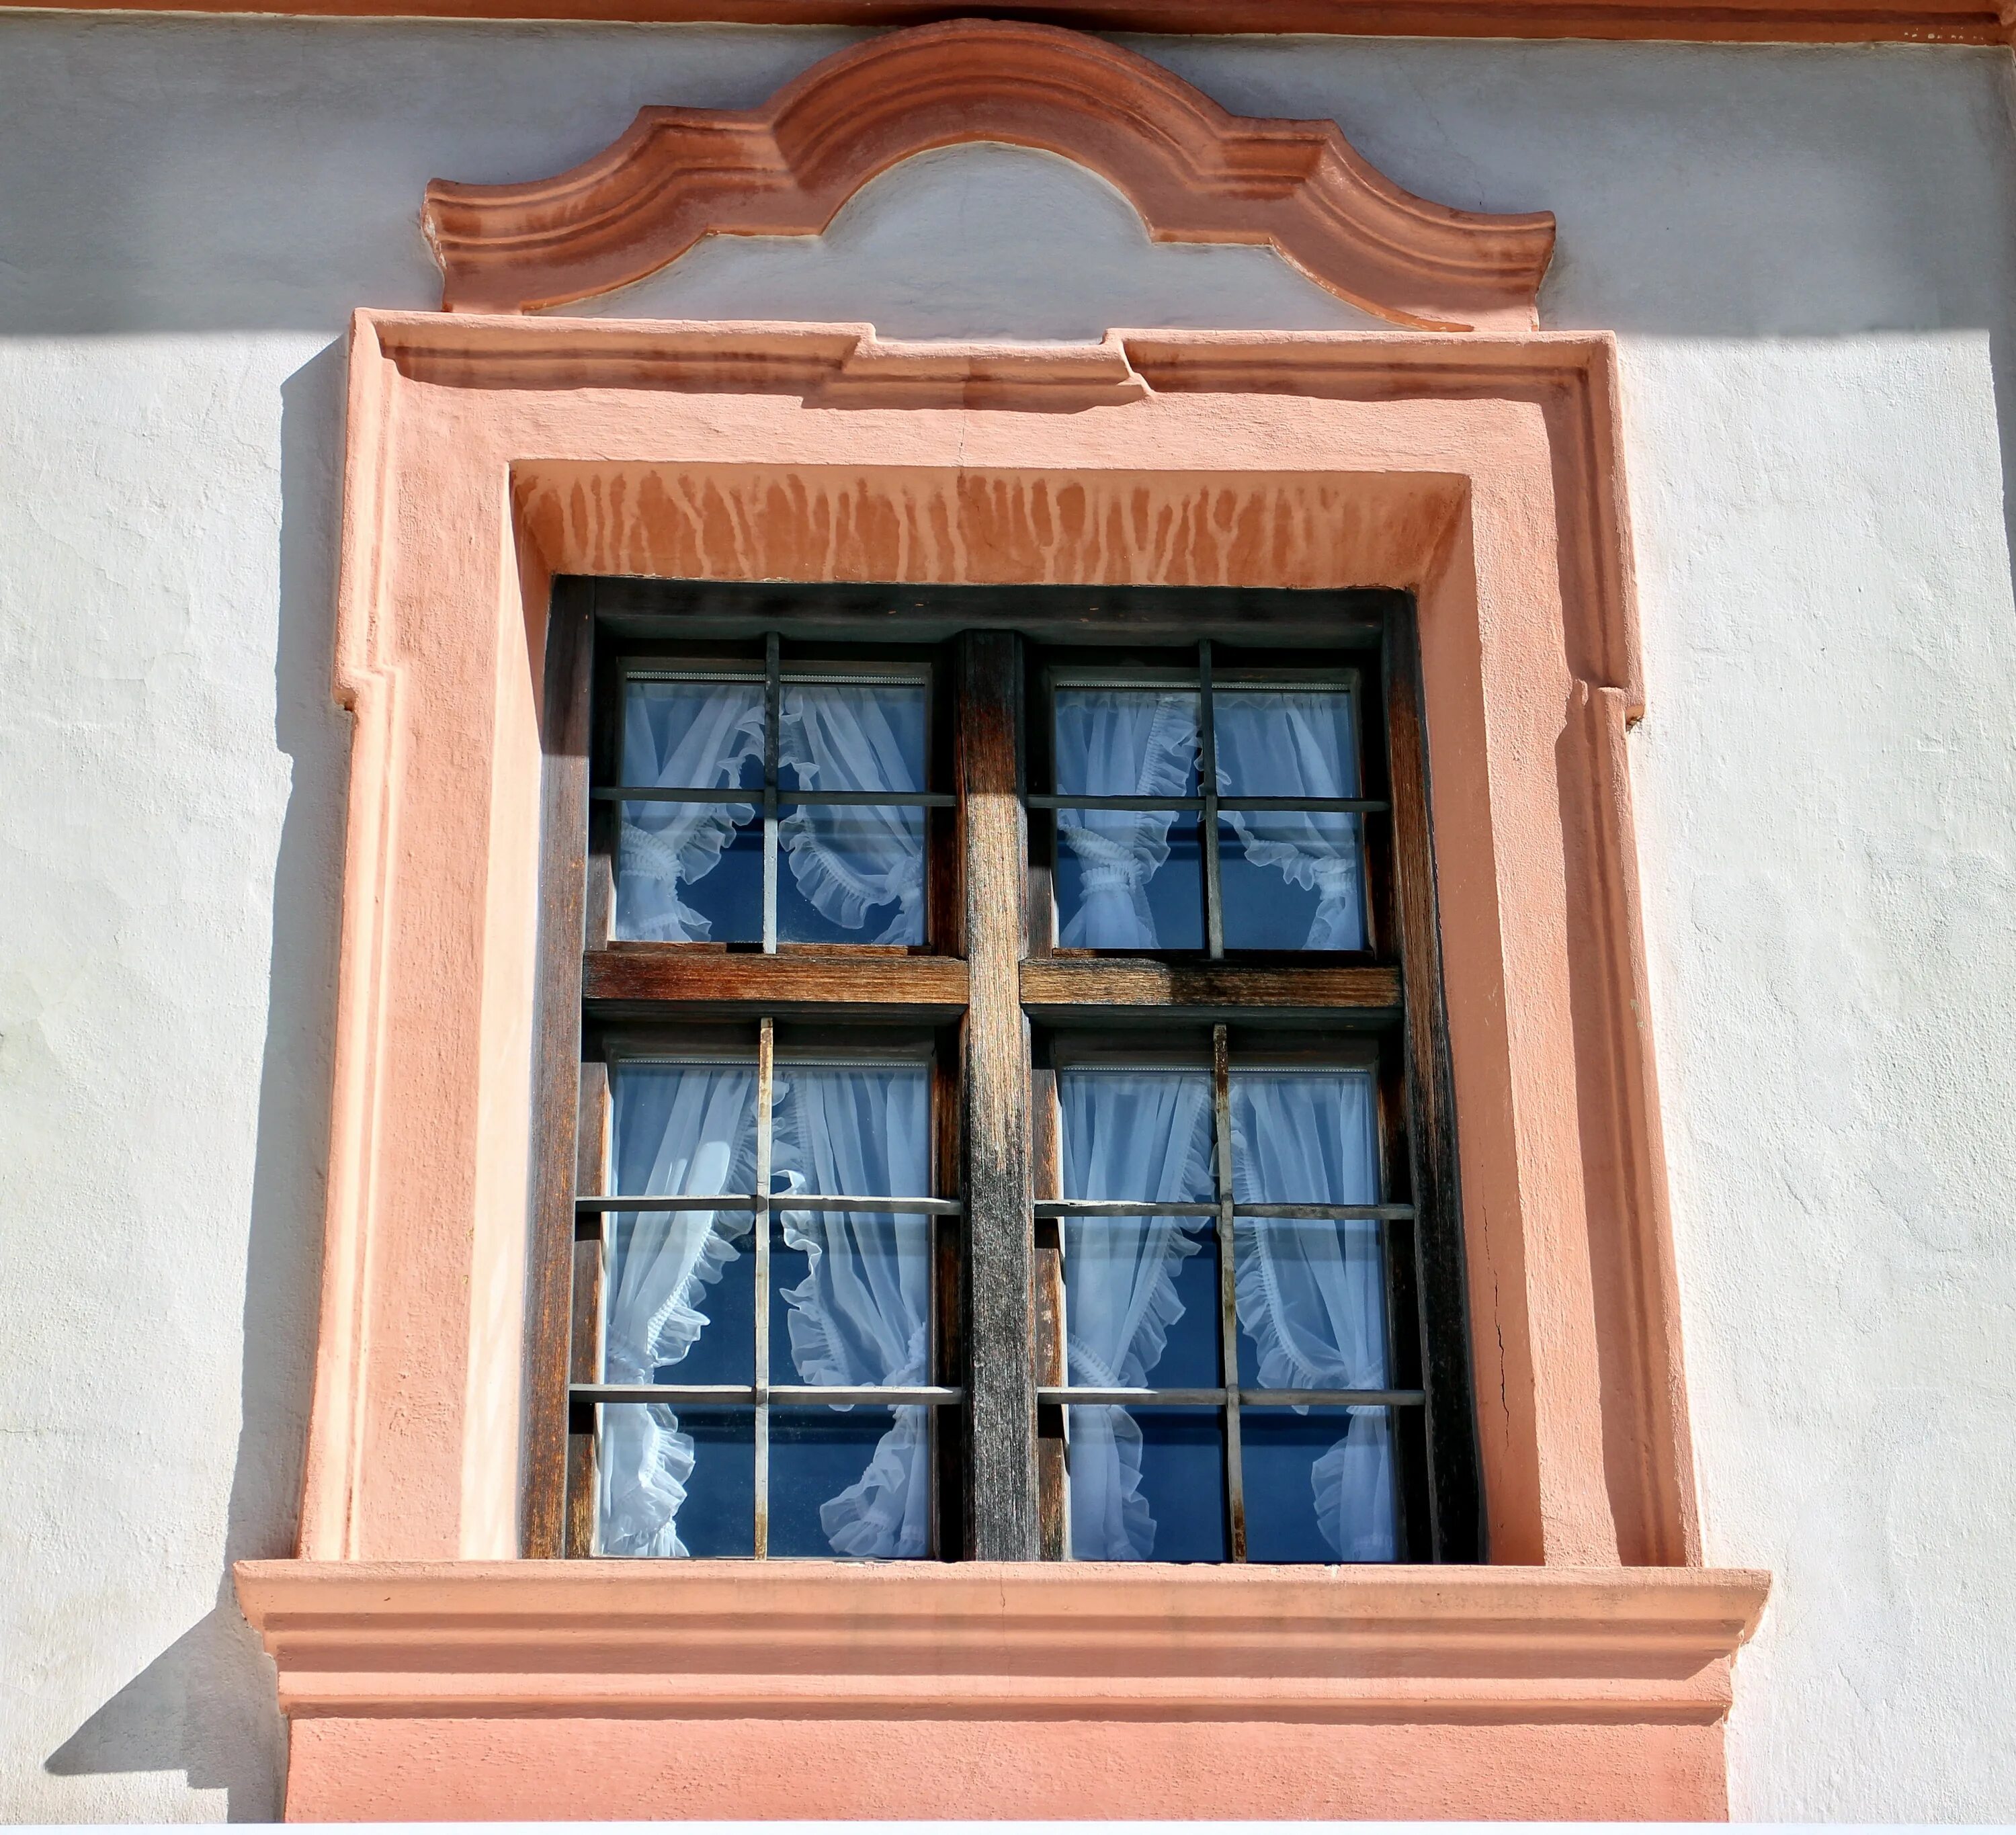 Окна старинный дом. Старинные окна. Деревянные окна в исторические здания. Деревянные окна в старинном стиле. Обрамление окон.